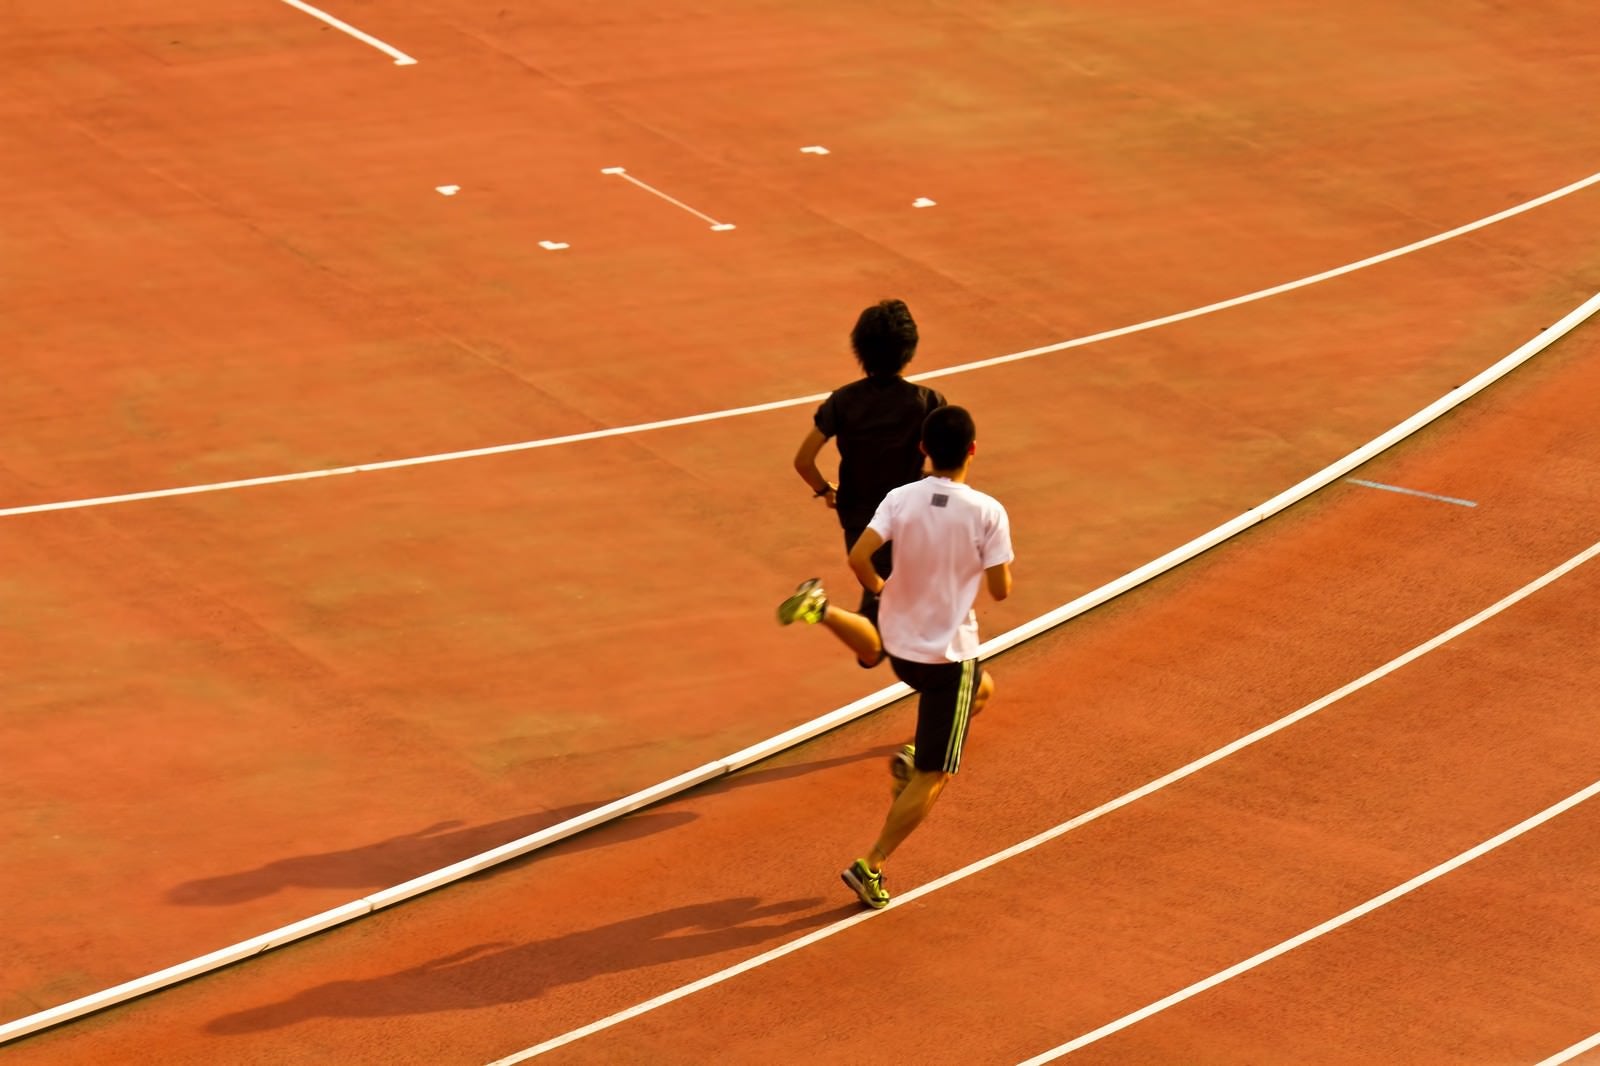 「競技場を走る陸上選手」の写真